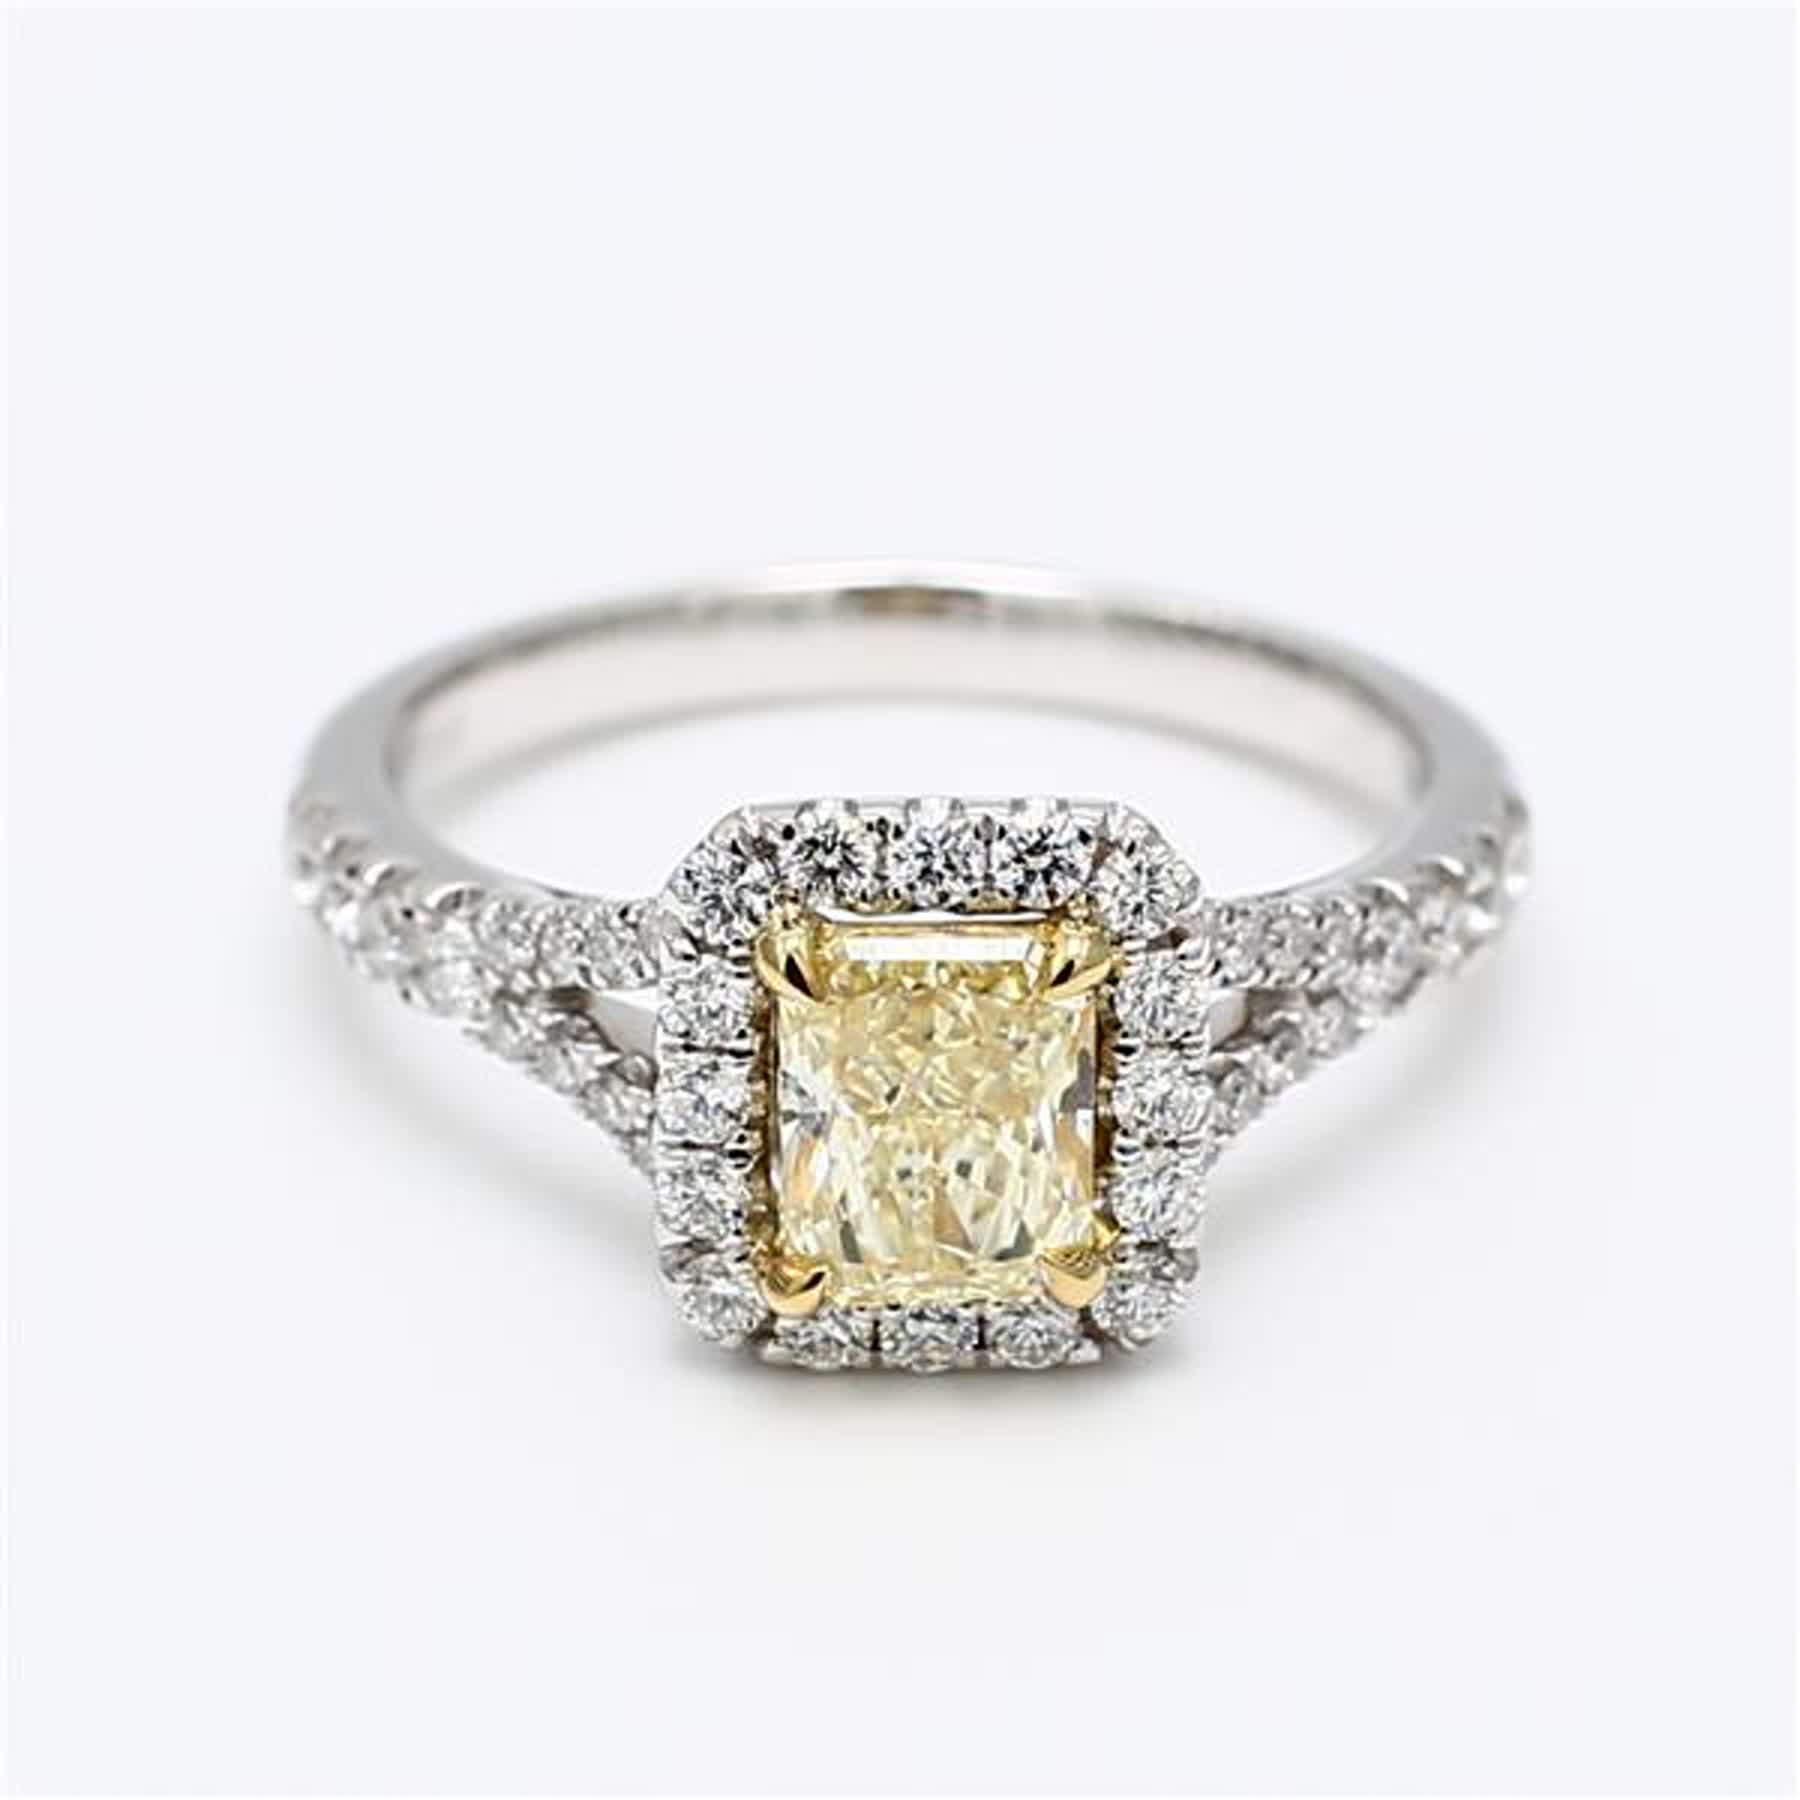 Bague plaquée en diamant jaune radiant et blanc de 1.44 carat poids total, certifiée GIA